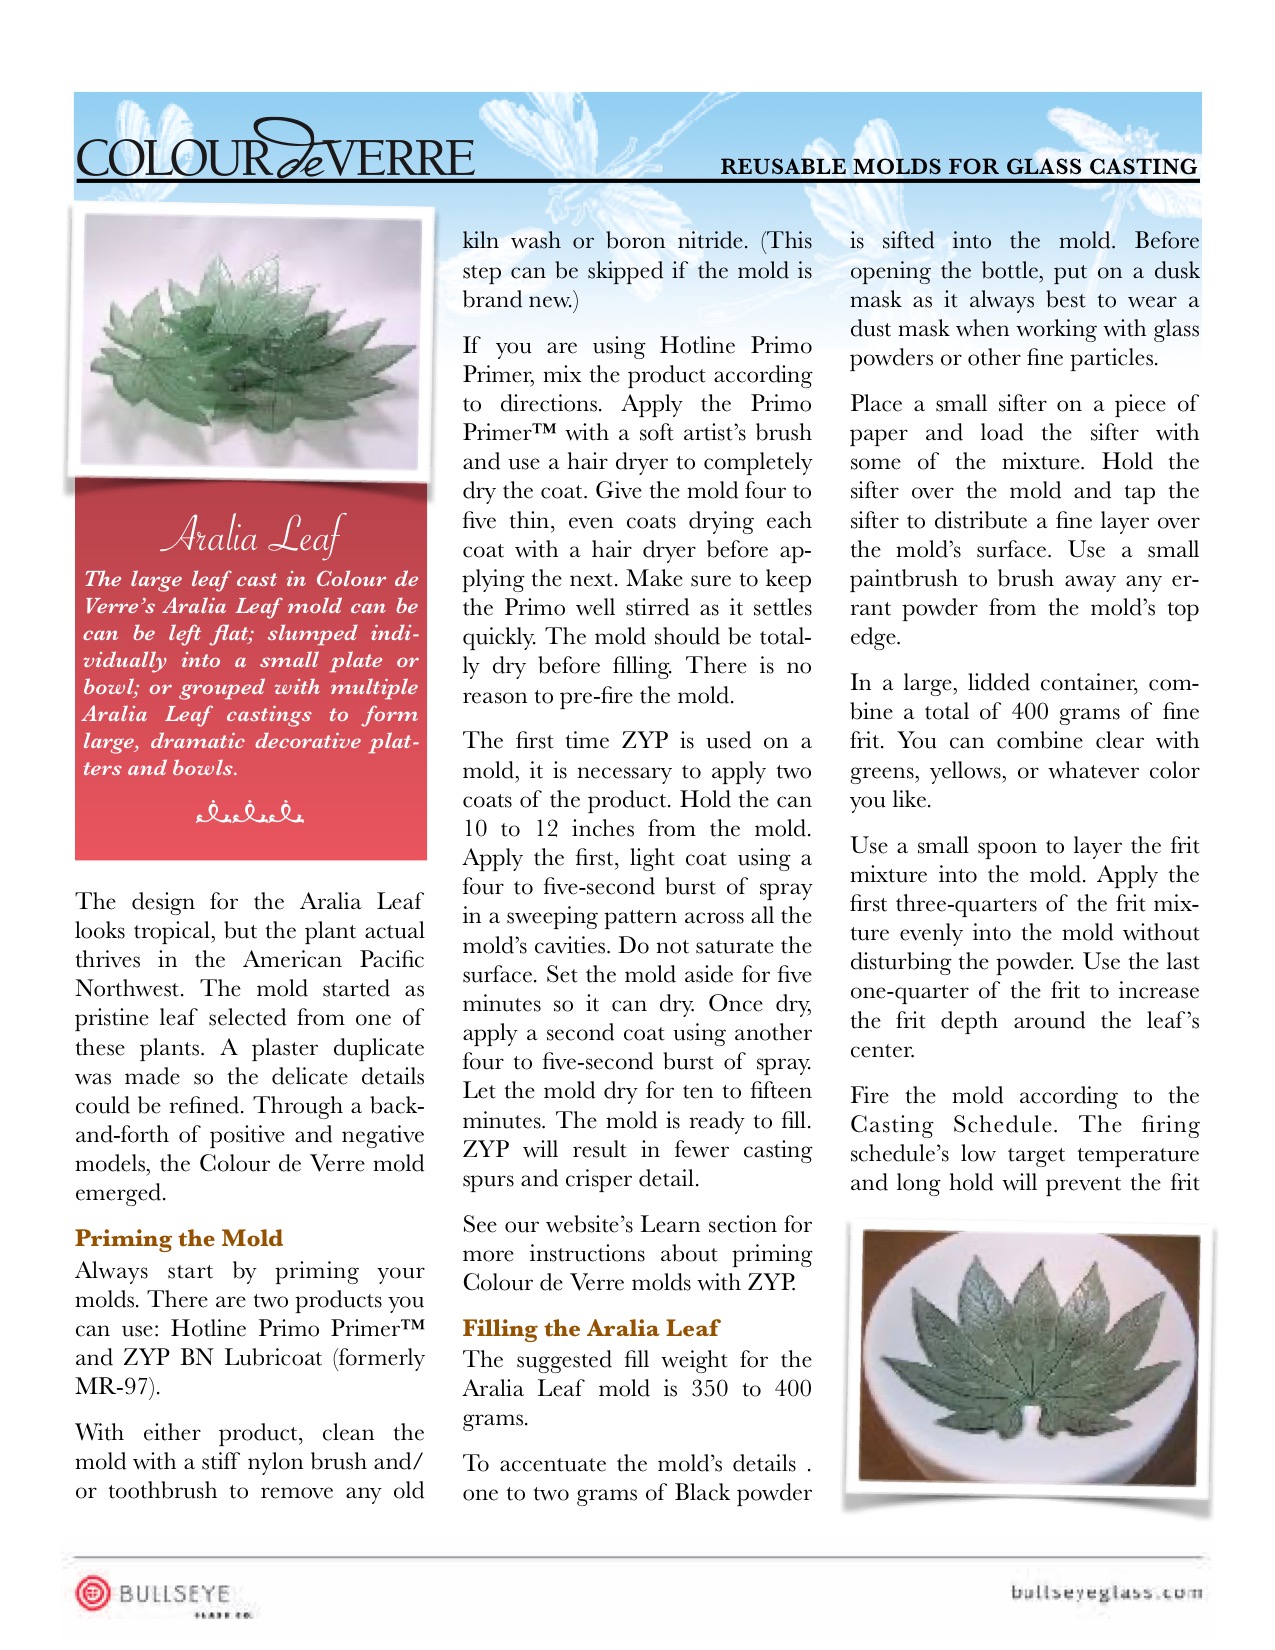 aralia leaf document thumbnail